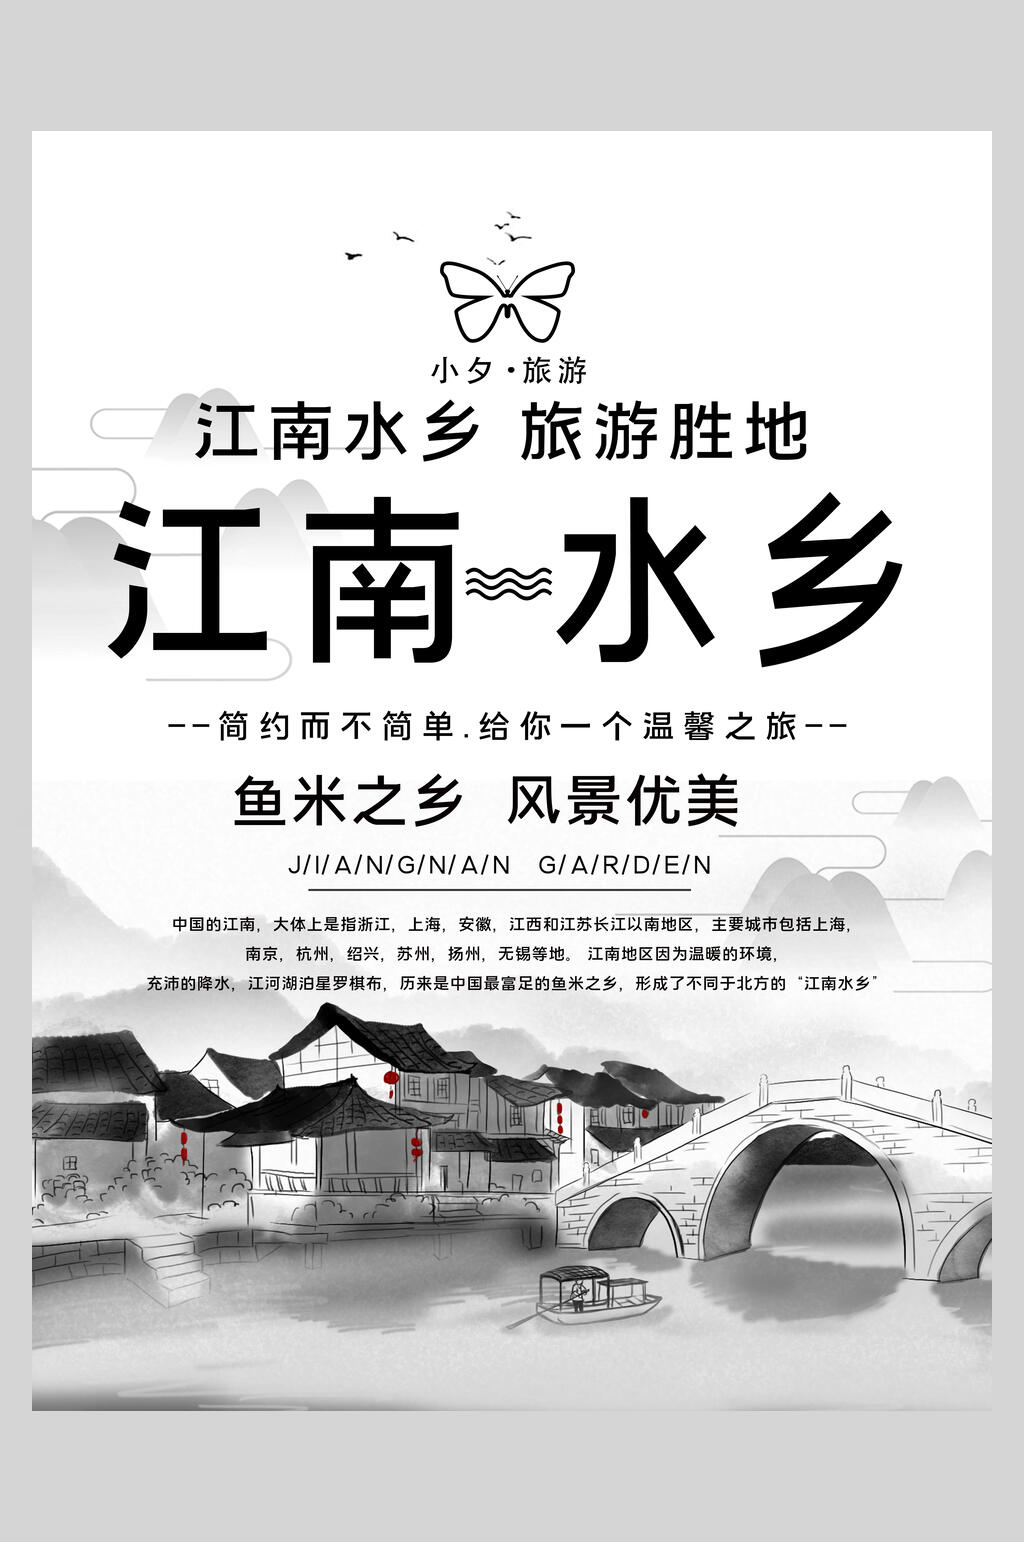 江南鱼米水乡旅游宣传海报